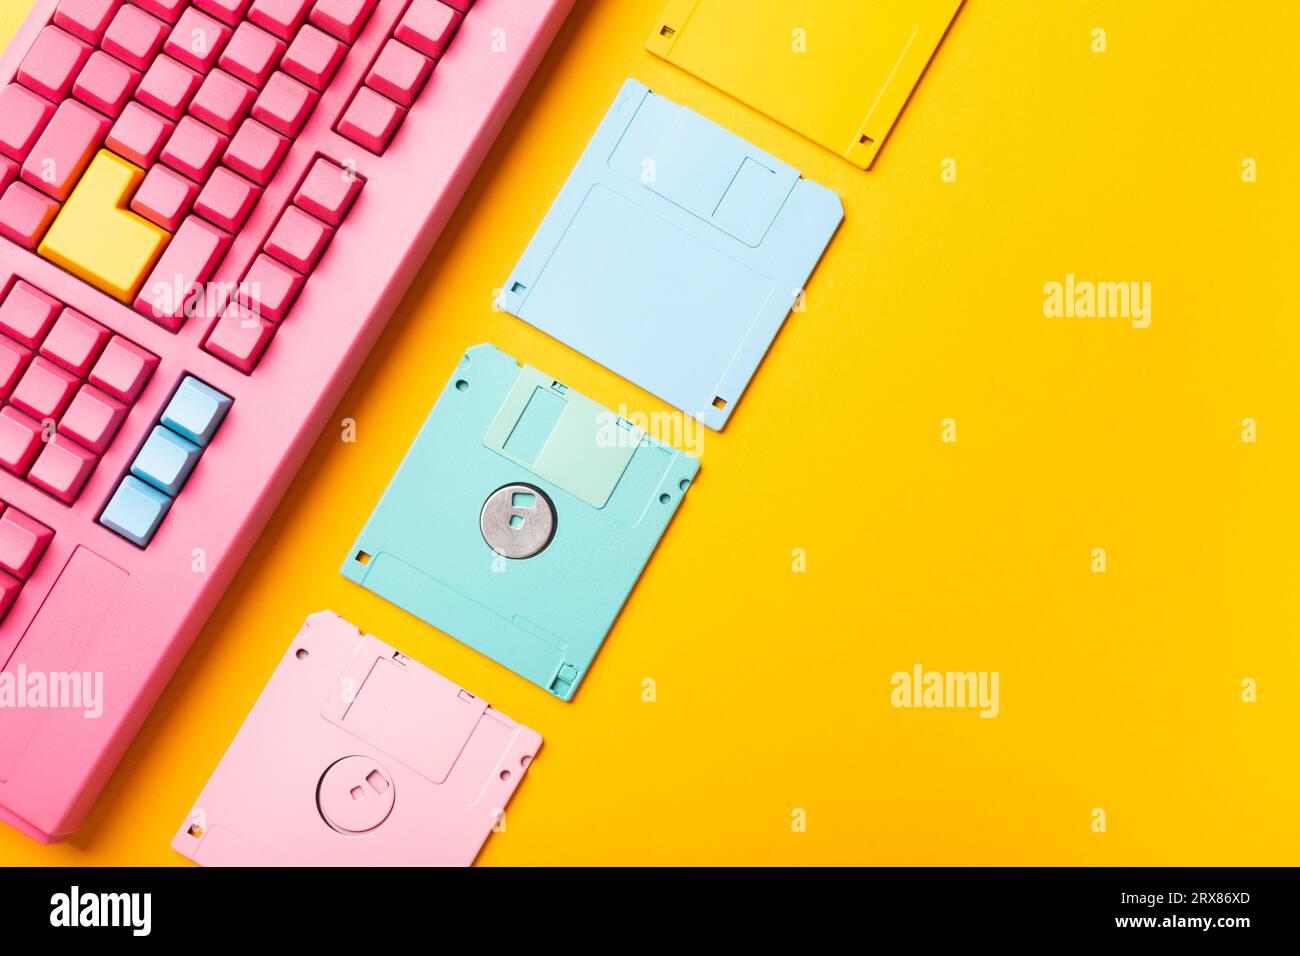 Disketten und Tastatur auf hellen farbigen Hintergründen. Hochwertige Fotos Stockfoto